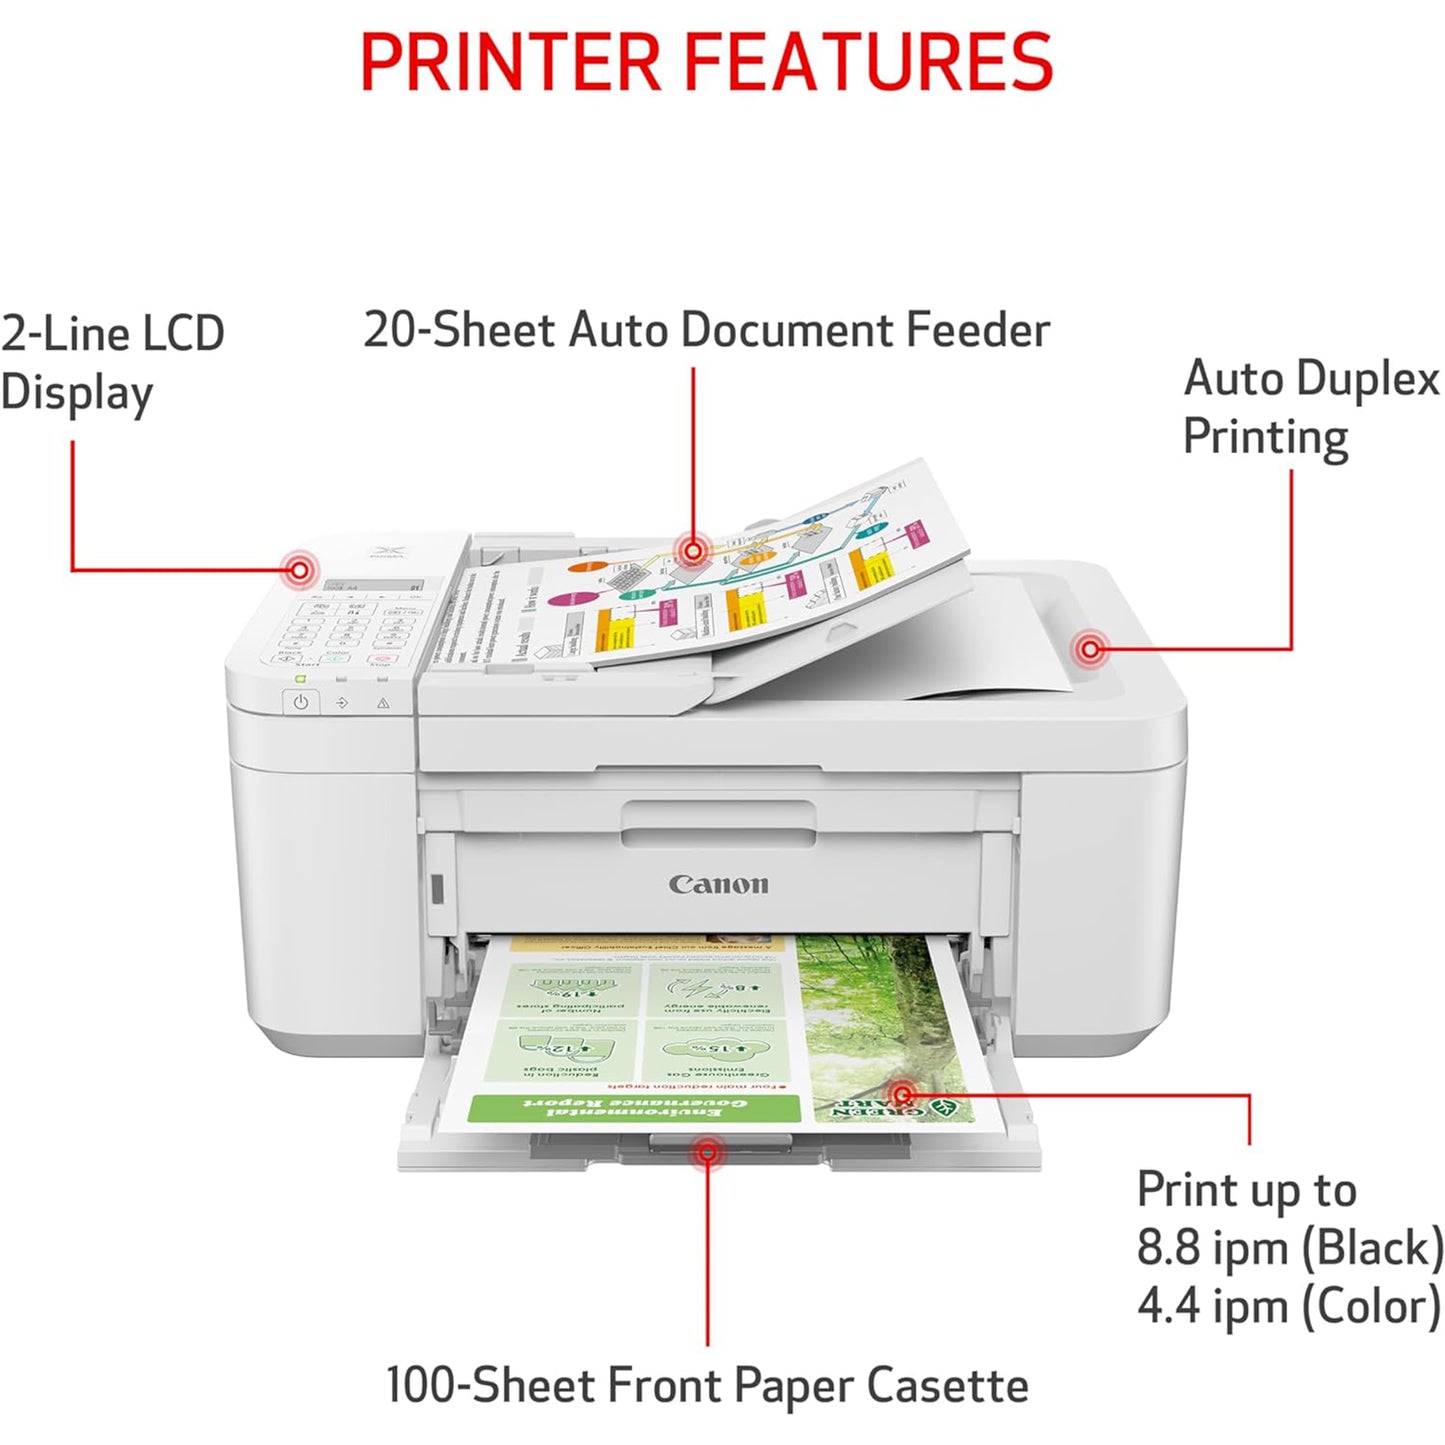 PIXMA TR4720 Wireless All-in-One Printer